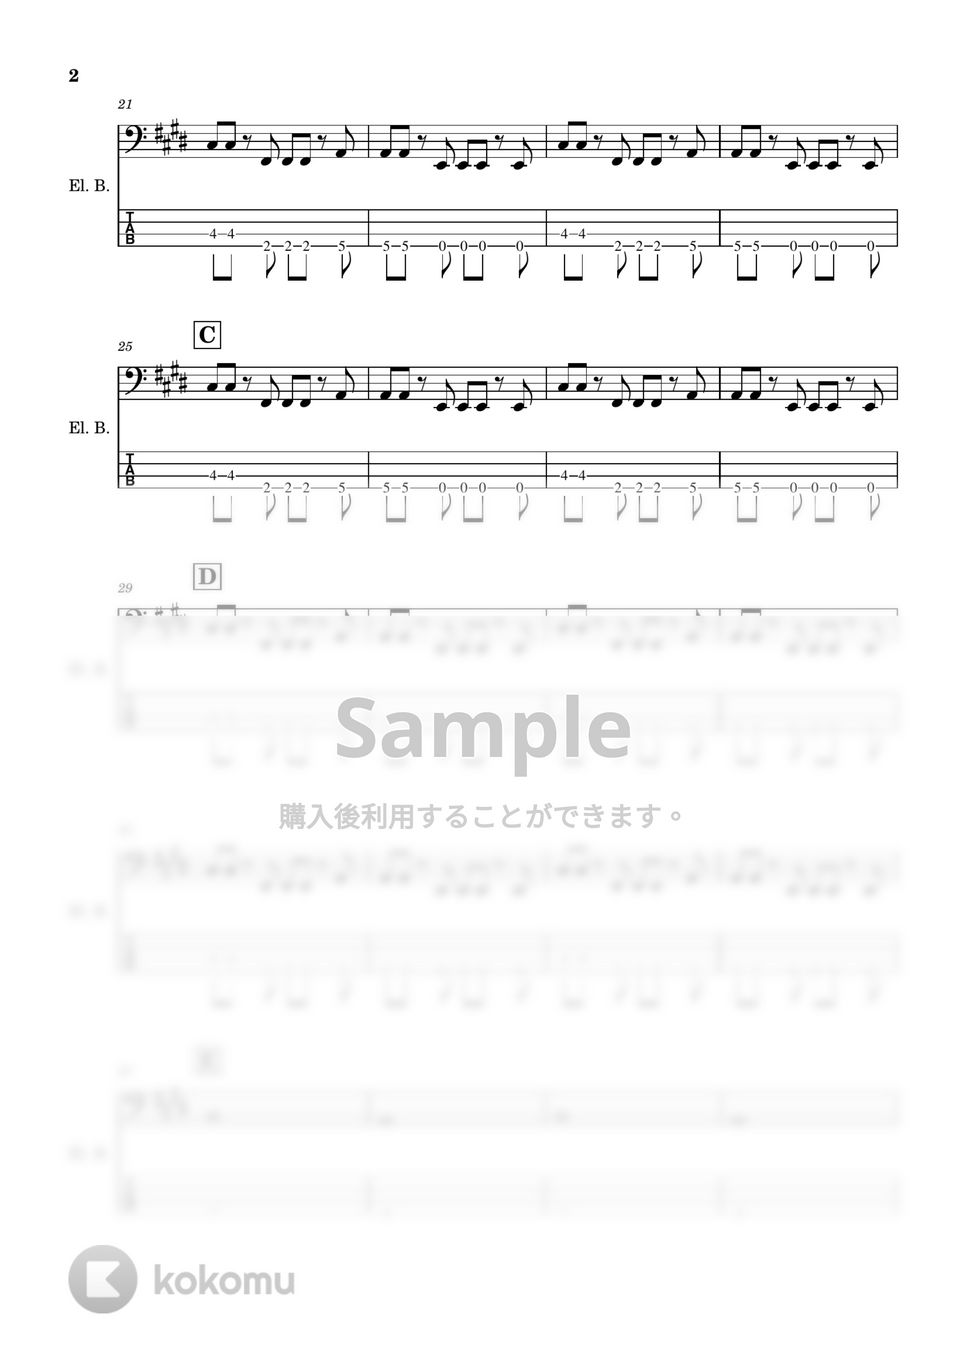 KANA-BOON - 【ベース楽譜】 ないものねだり / KANA-BOON - Naimononedari / KANA-BOON 【BassScore】 by Cookie's Drum Score